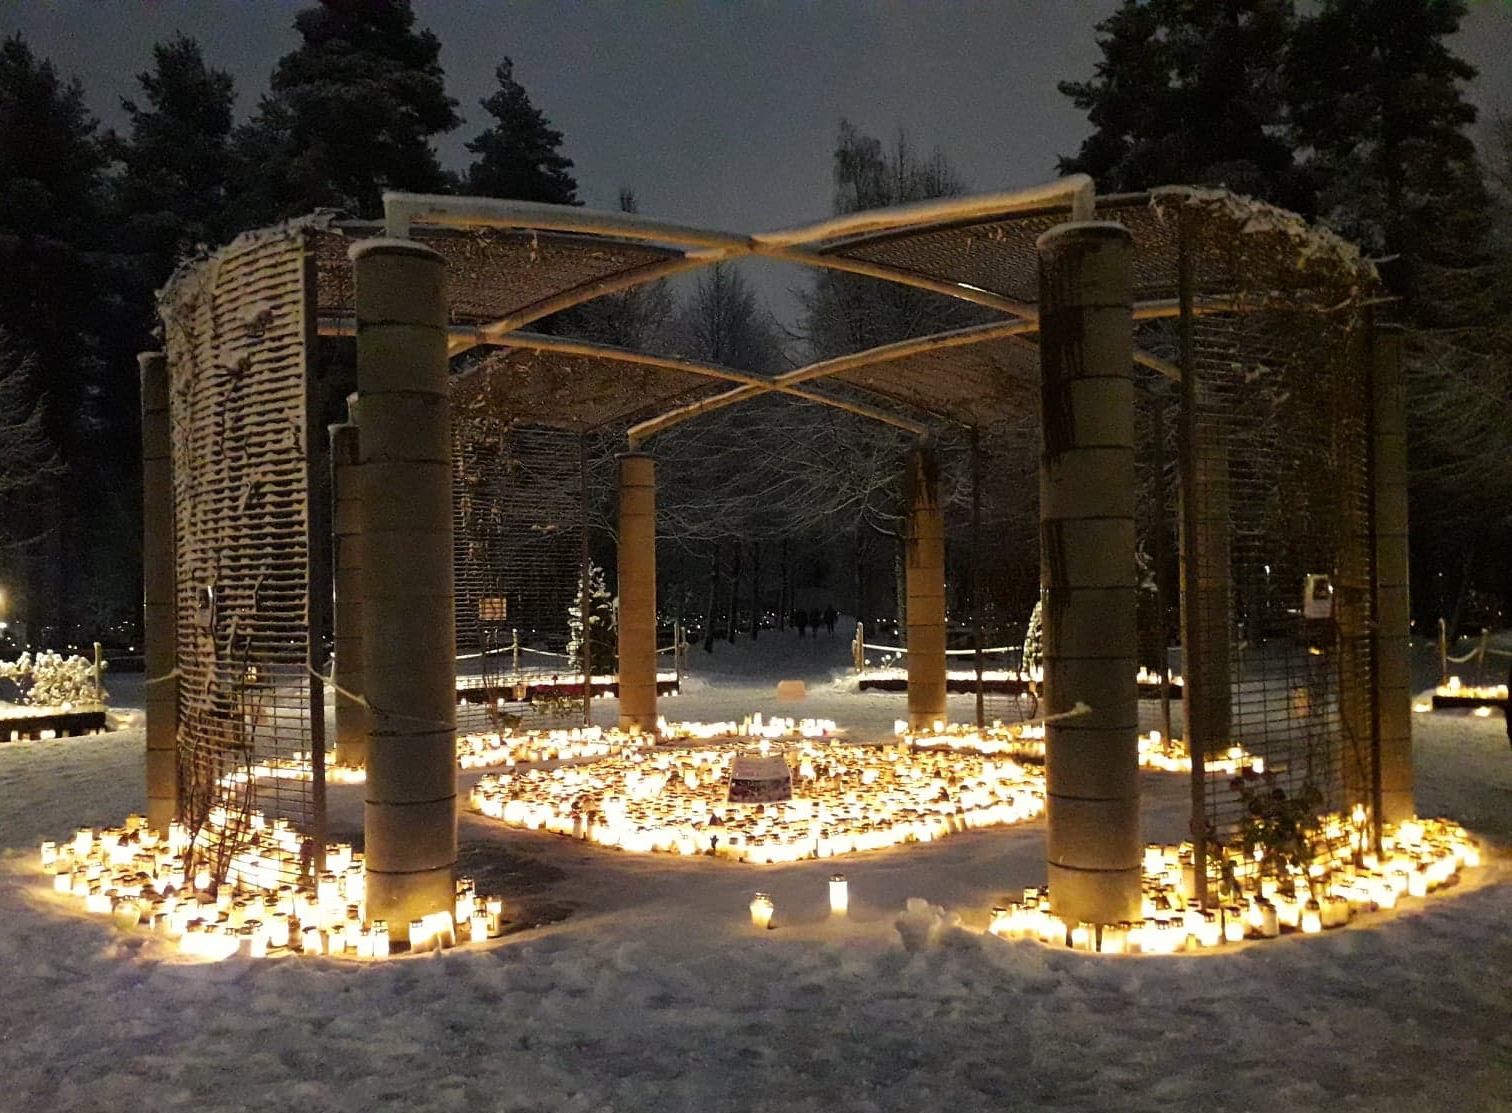 Kynttilöitä Joensuun hautausmaan muistelupaikalla illanhämärässä jouluna 2019.